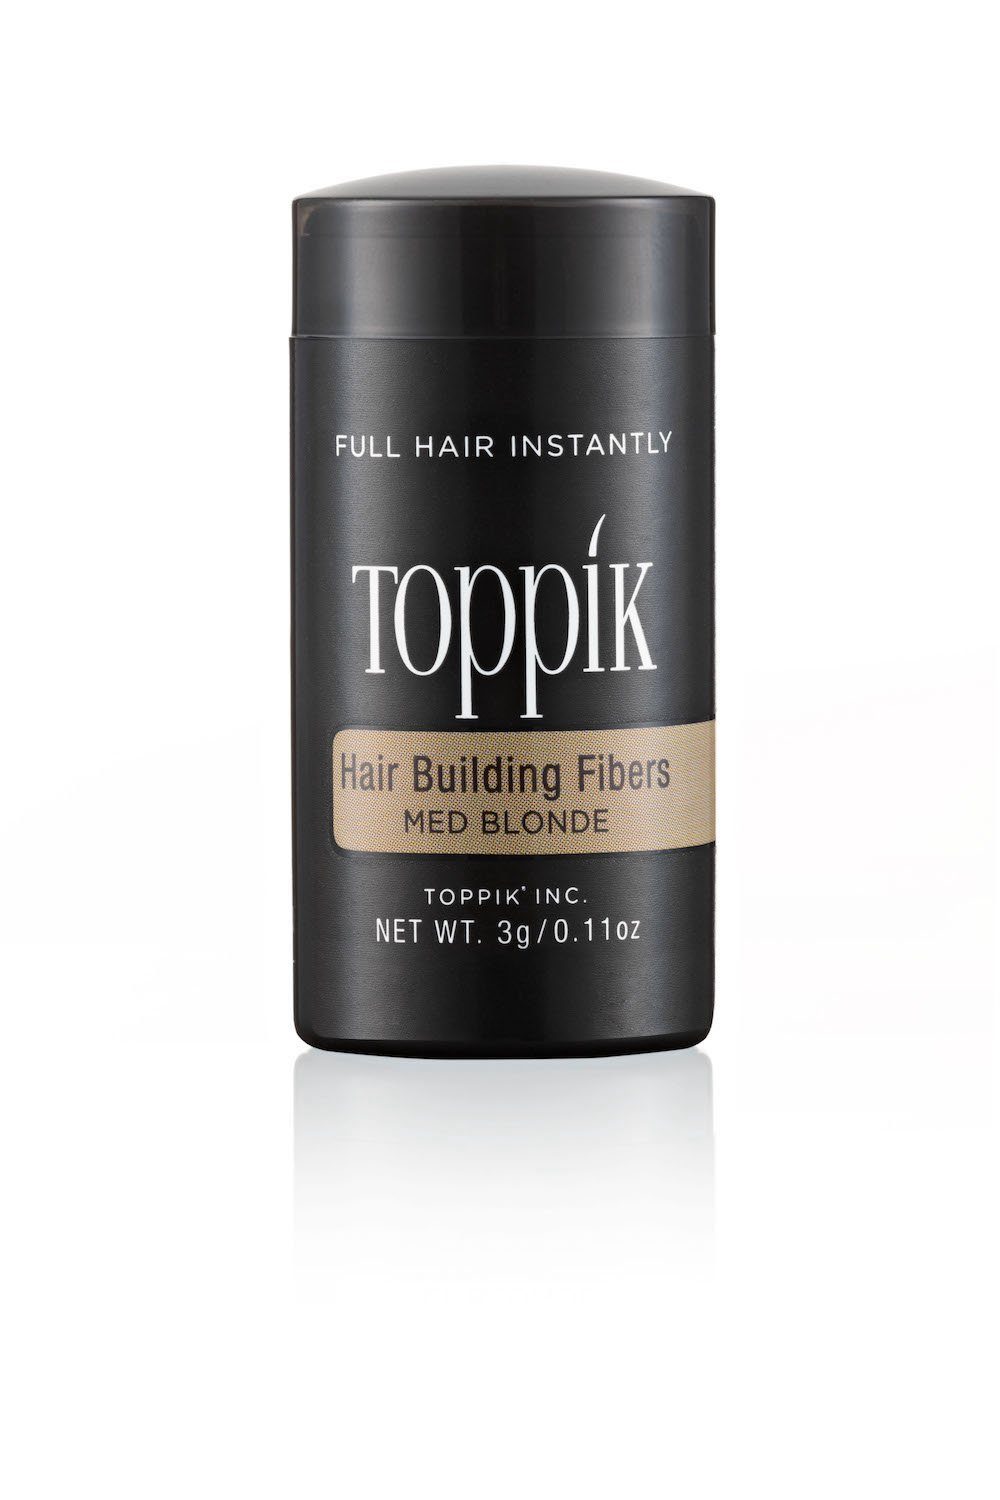 TOPPIK Haarstyling-Set TOPPIK 3g. Puder, Mittelblond Fibers Haarfasern, Streuhaar, Haarverdichtung, - Schütthaar, Hair